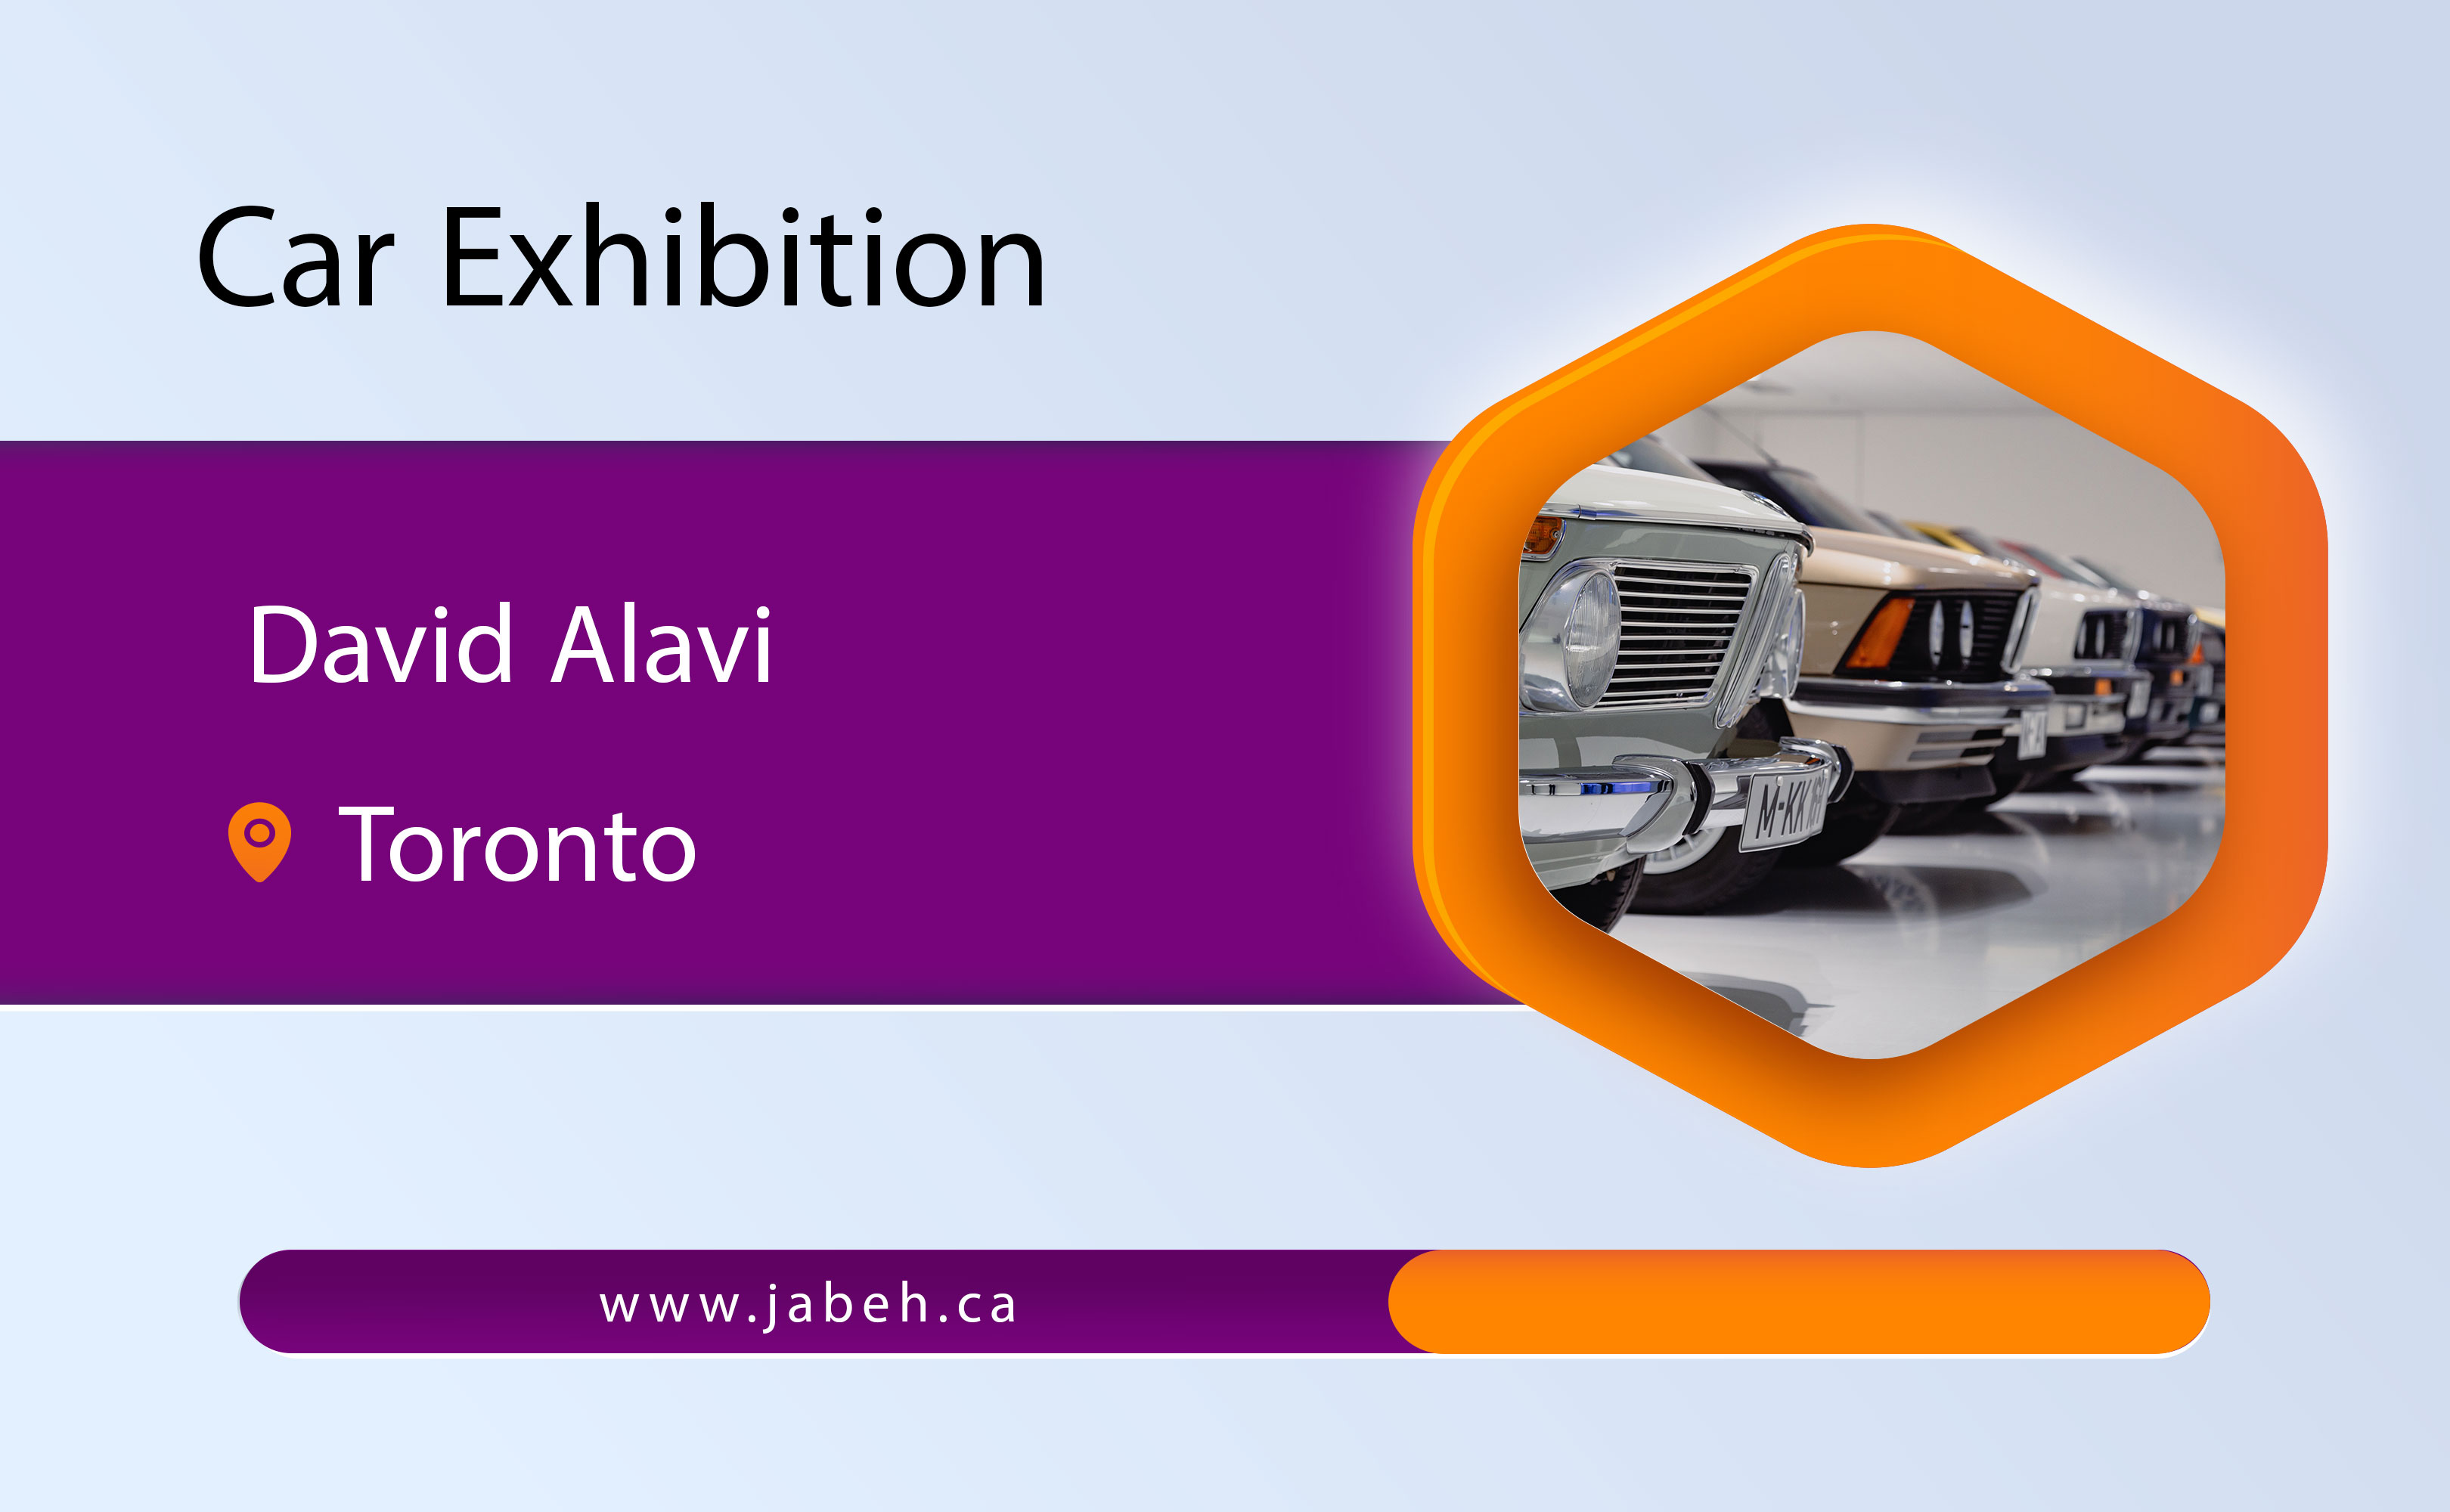 David Alavi car exhibition in Toronto